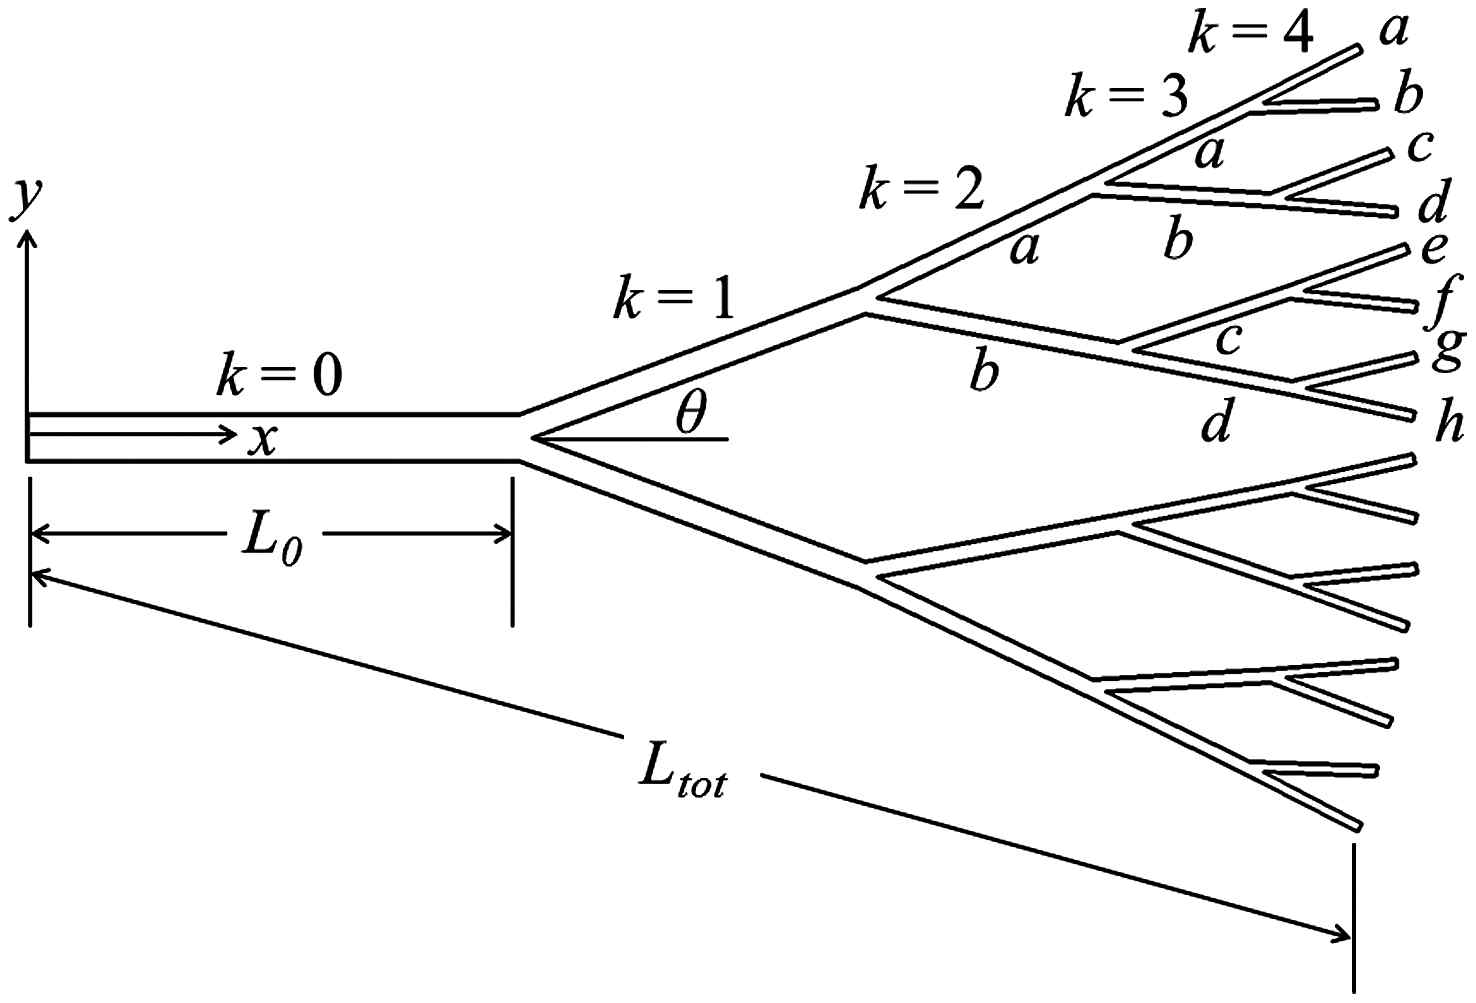 나뭇가지 형상의 연결 구조 및 좌표계